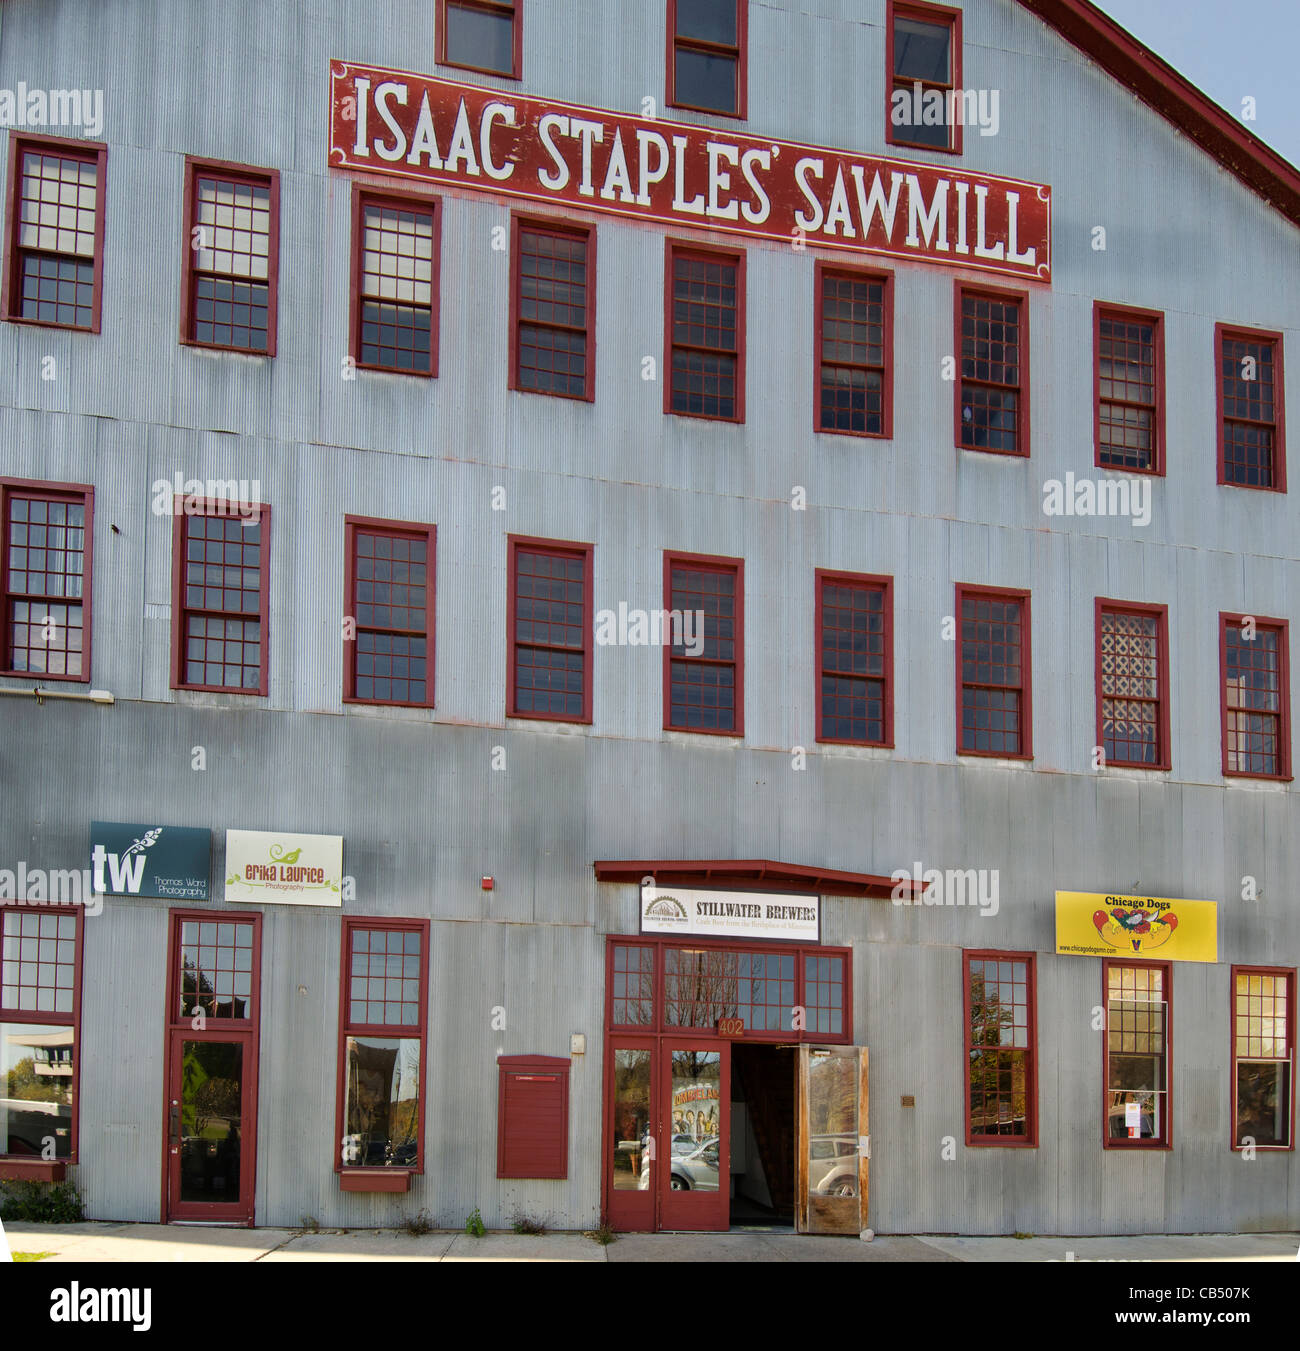 Isaac Staples Sägewerk ist eine Shopping Mall befindet sich im historischen Sägewerk Gebäude in Stillwater, Minnesota Stockfoto